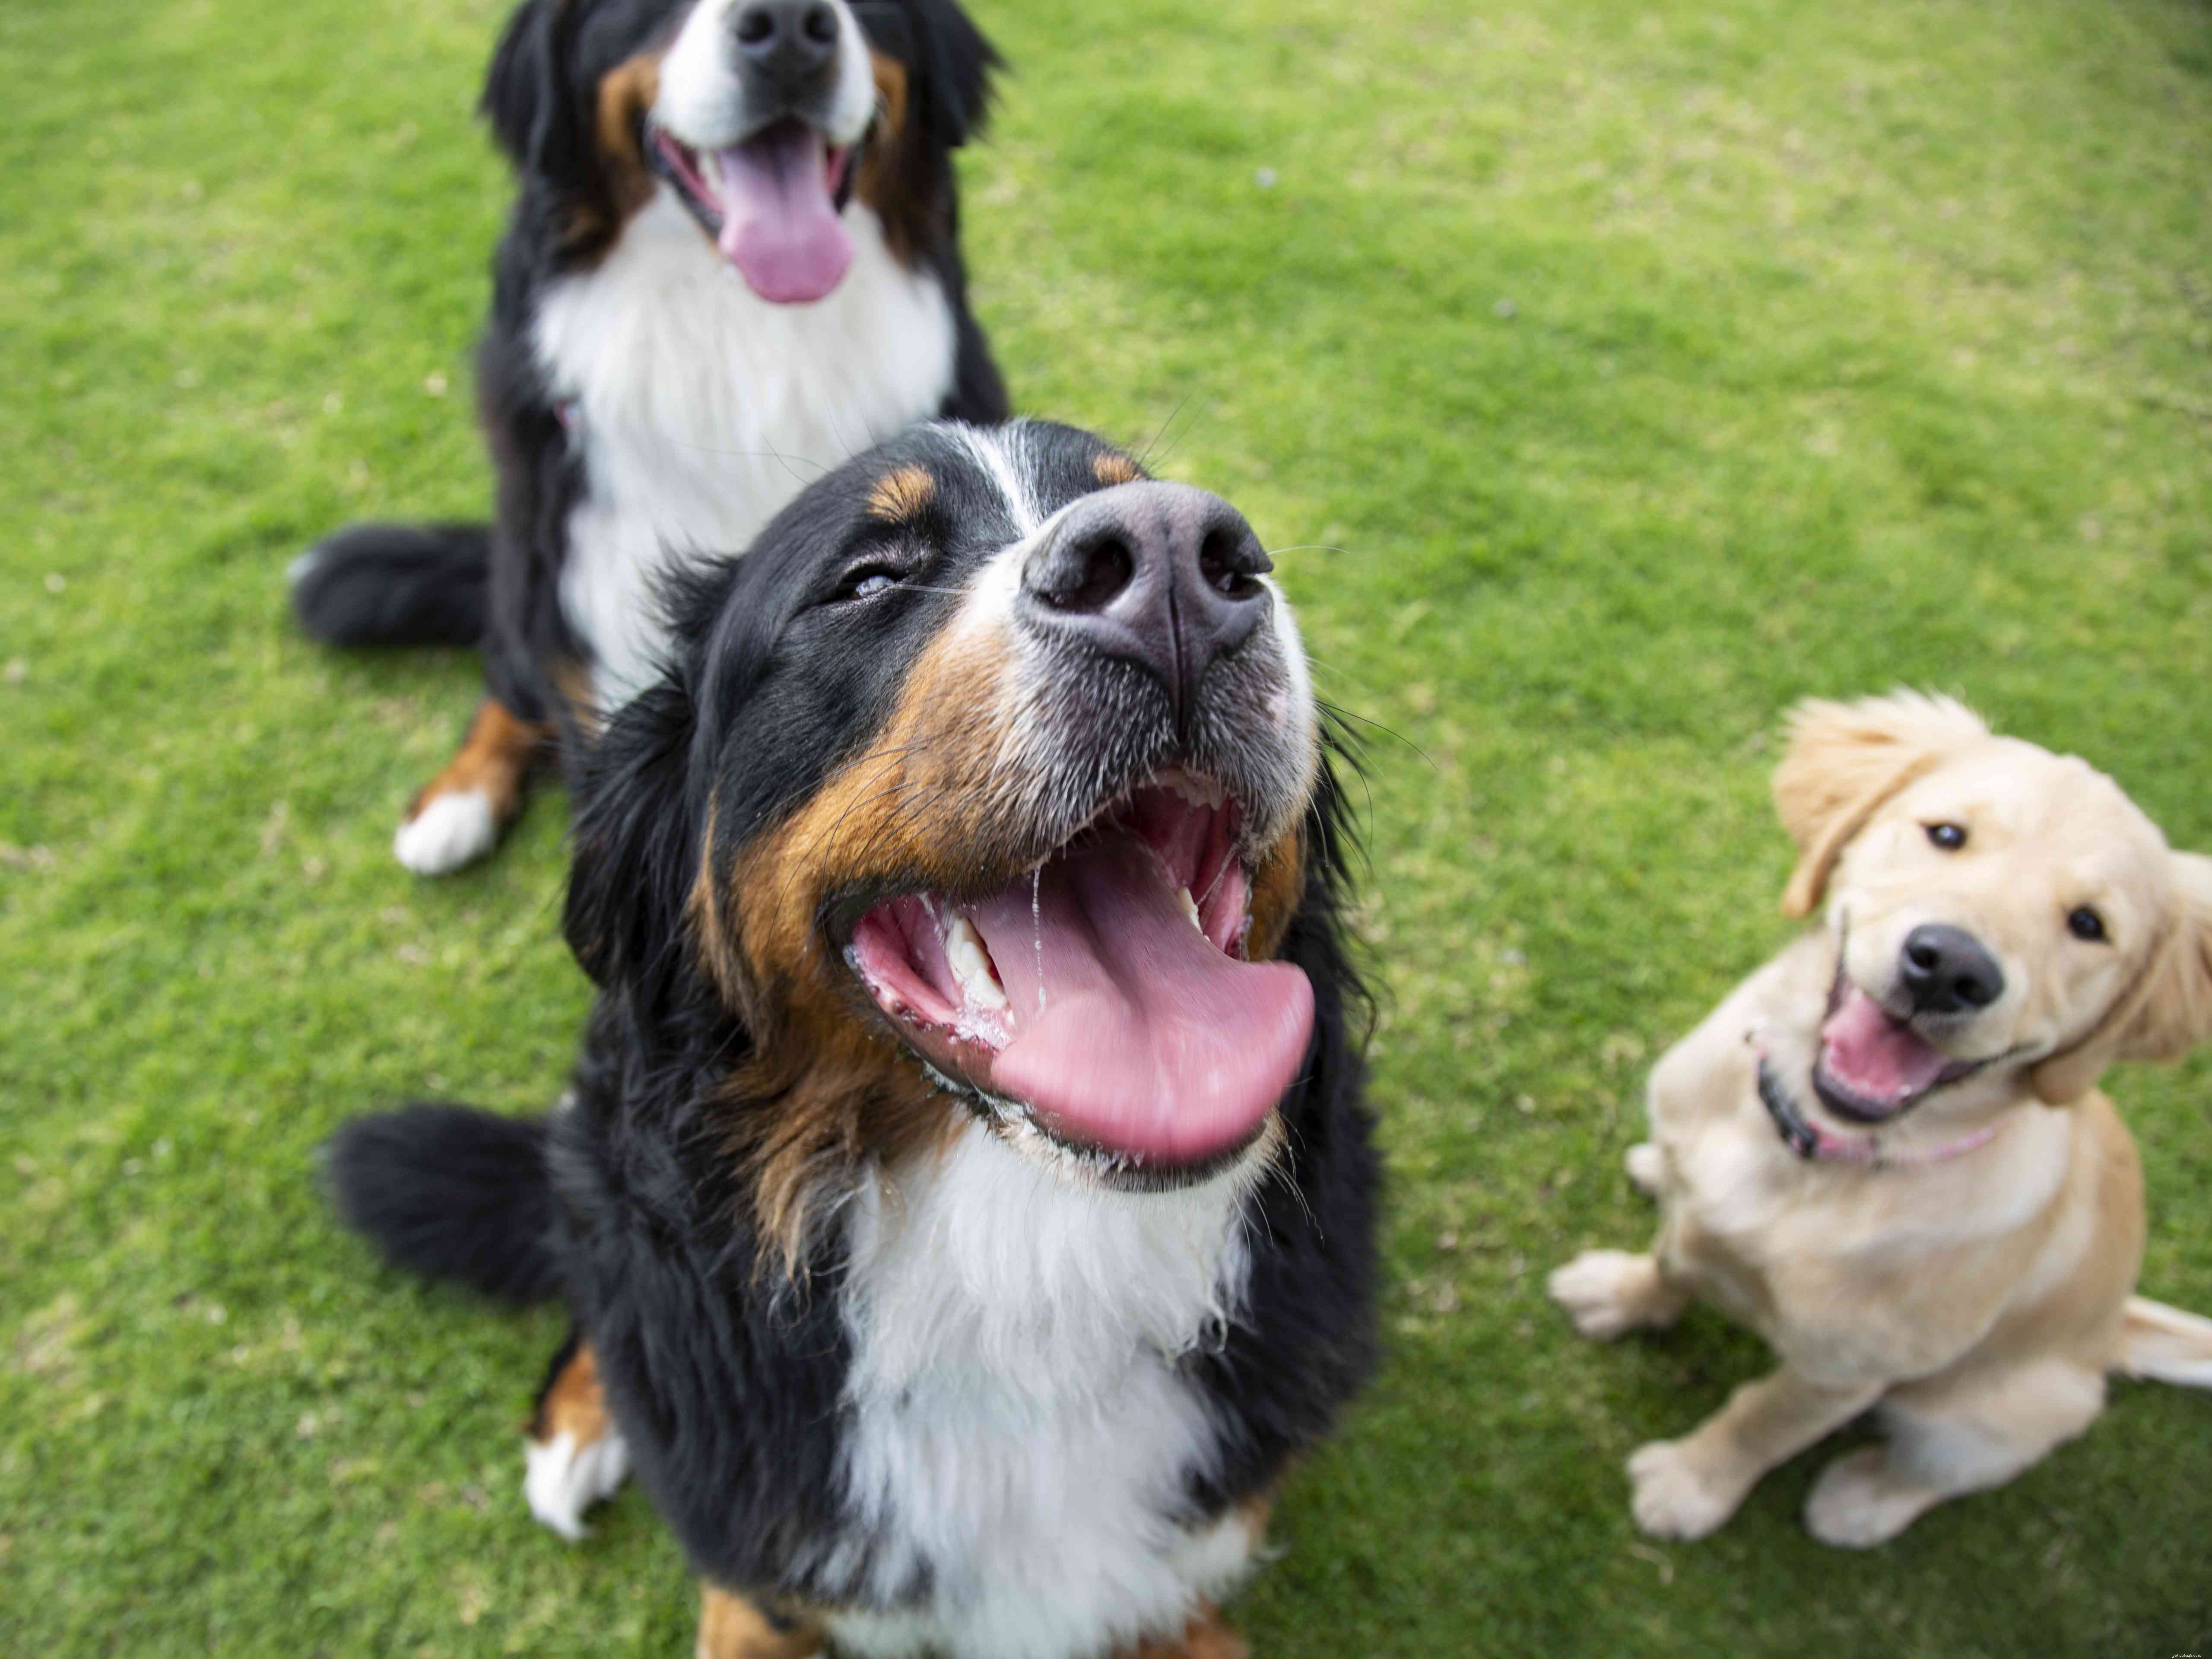 Les 5 meilleures façons d utiliser le renforcement positif pour récompenser un chien